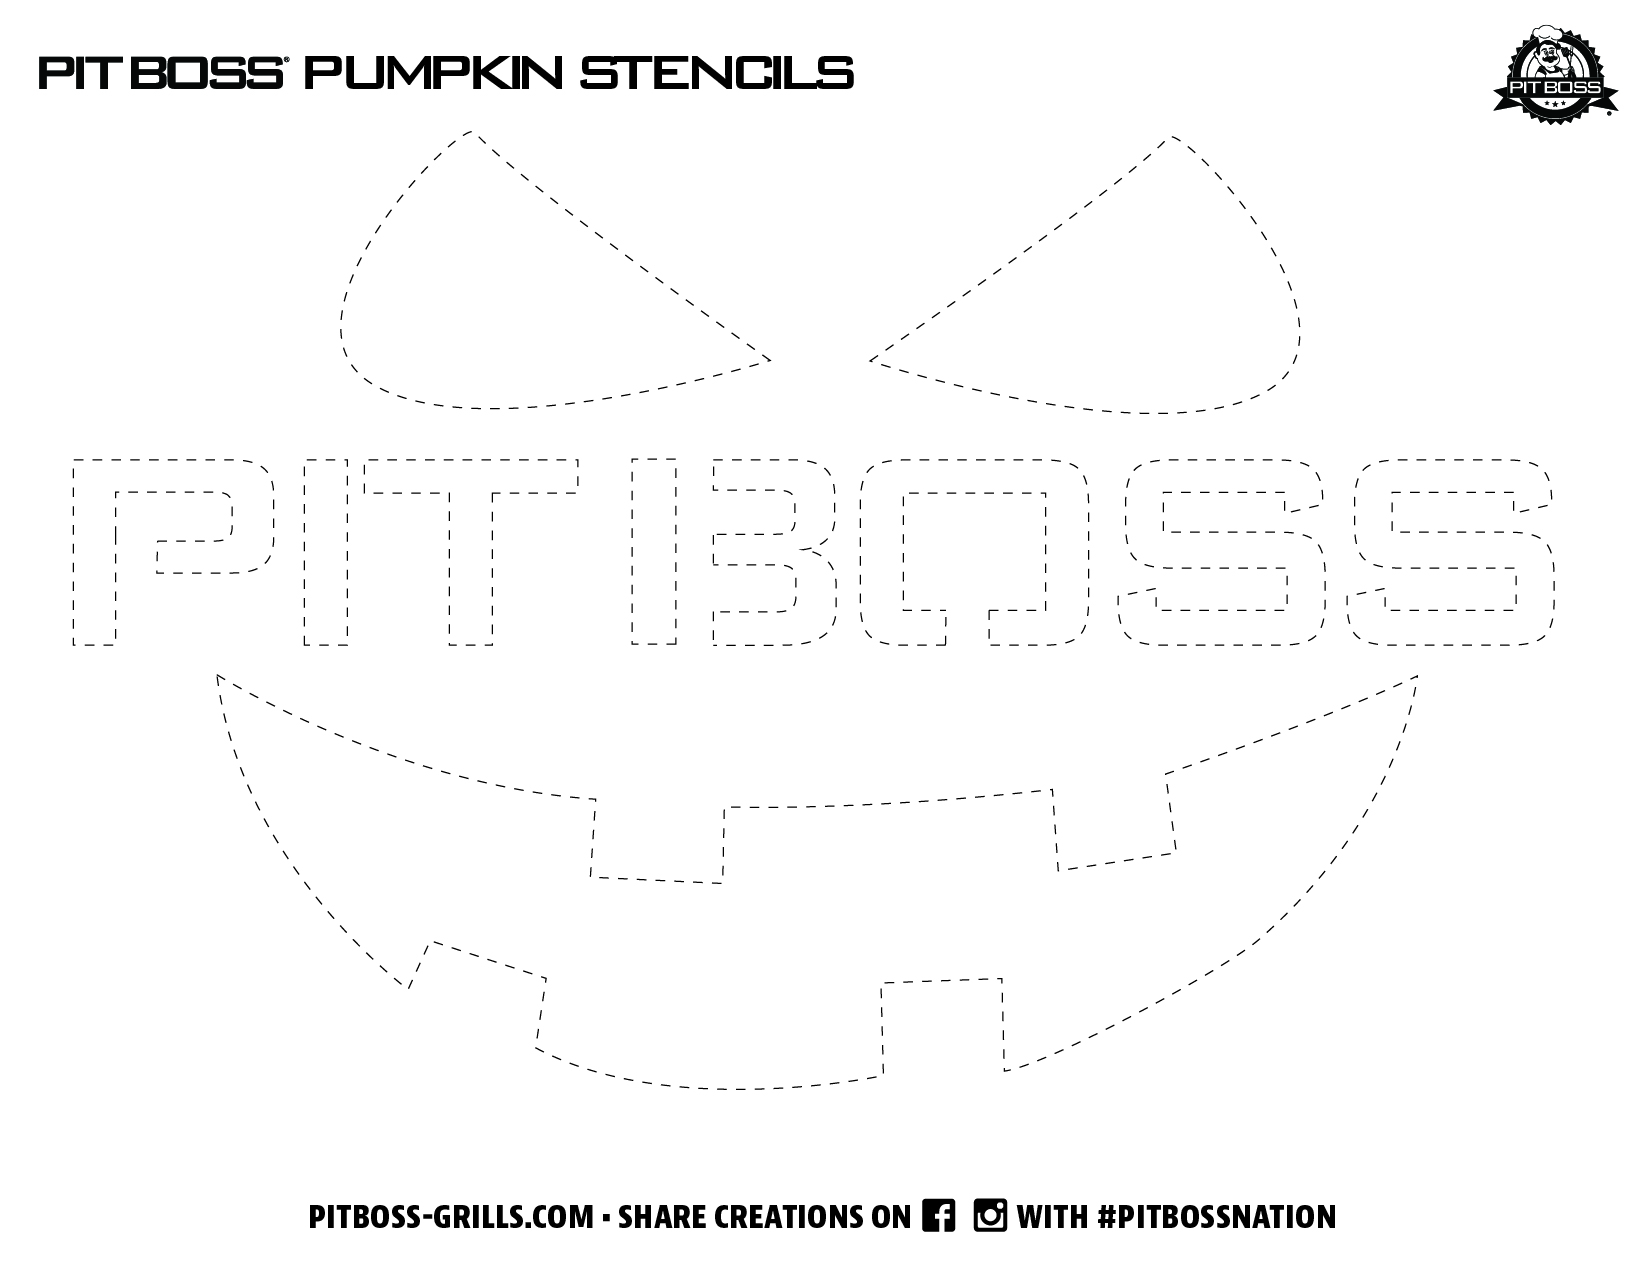 PitBoss Pumpkin Stencils 2021_1